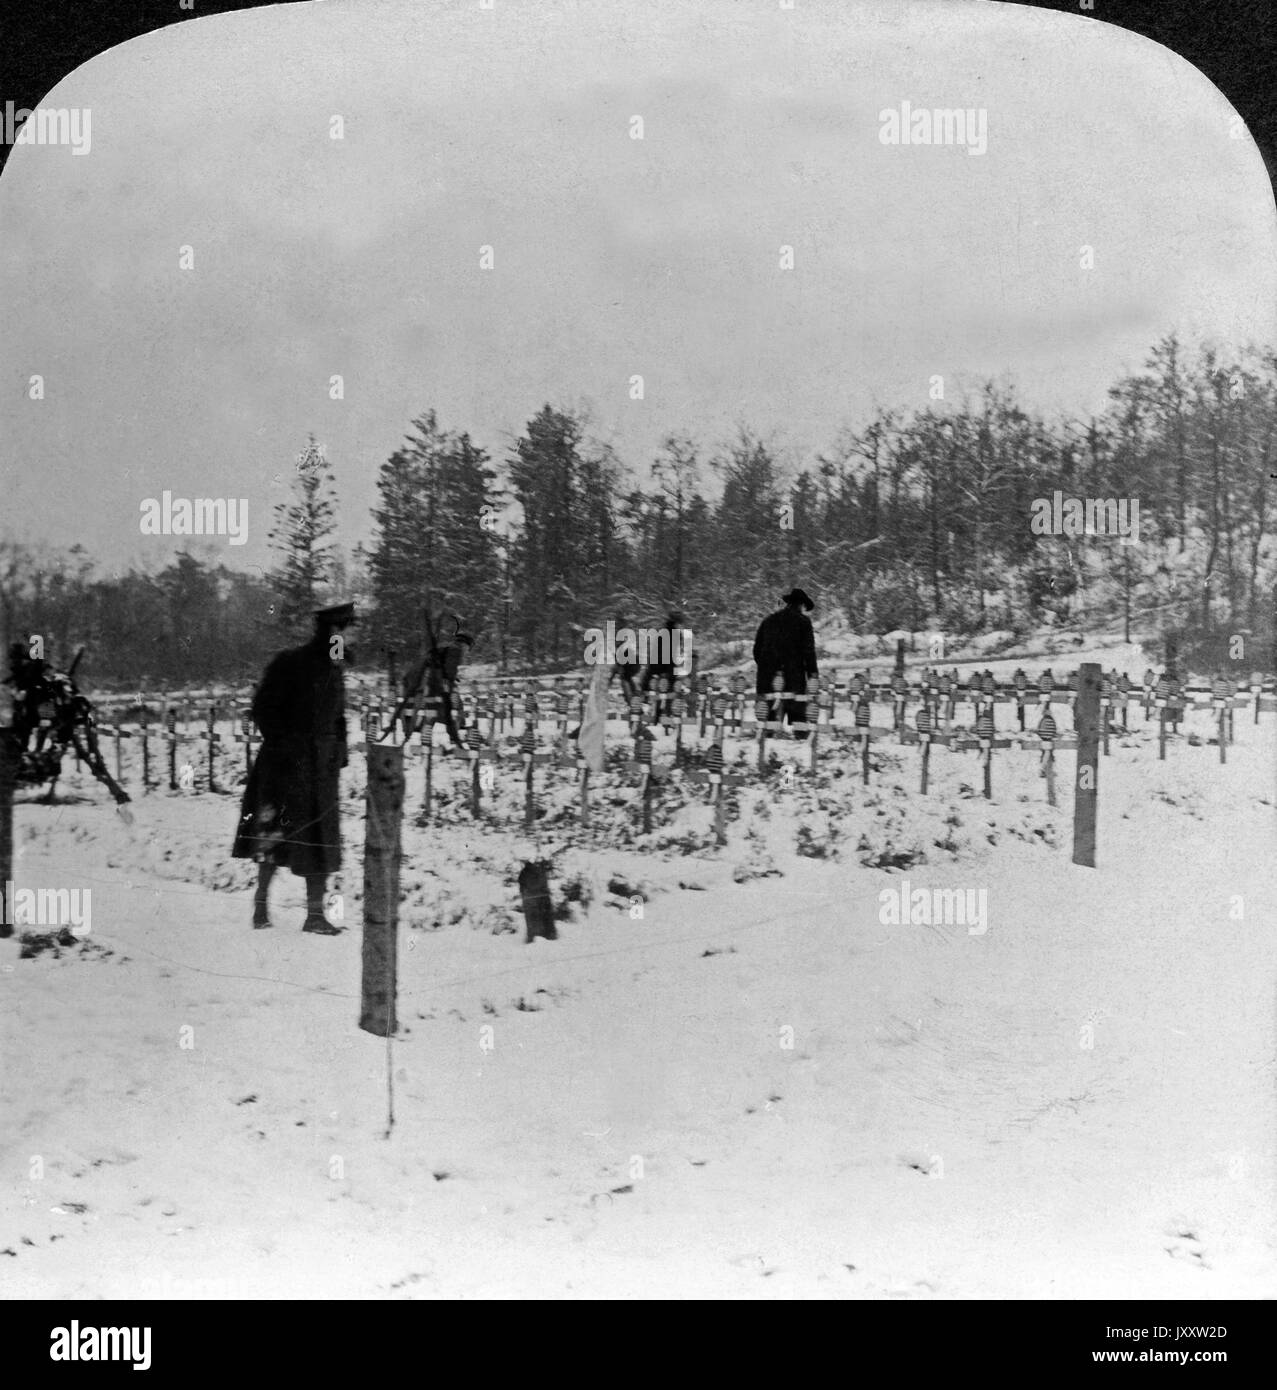 Gräber beim Wald von Belleau gefallener US Marines, Frankreich, 1918. Graves of U.S. Marines killed at Belleau Wood, France 1918. Stock Photo